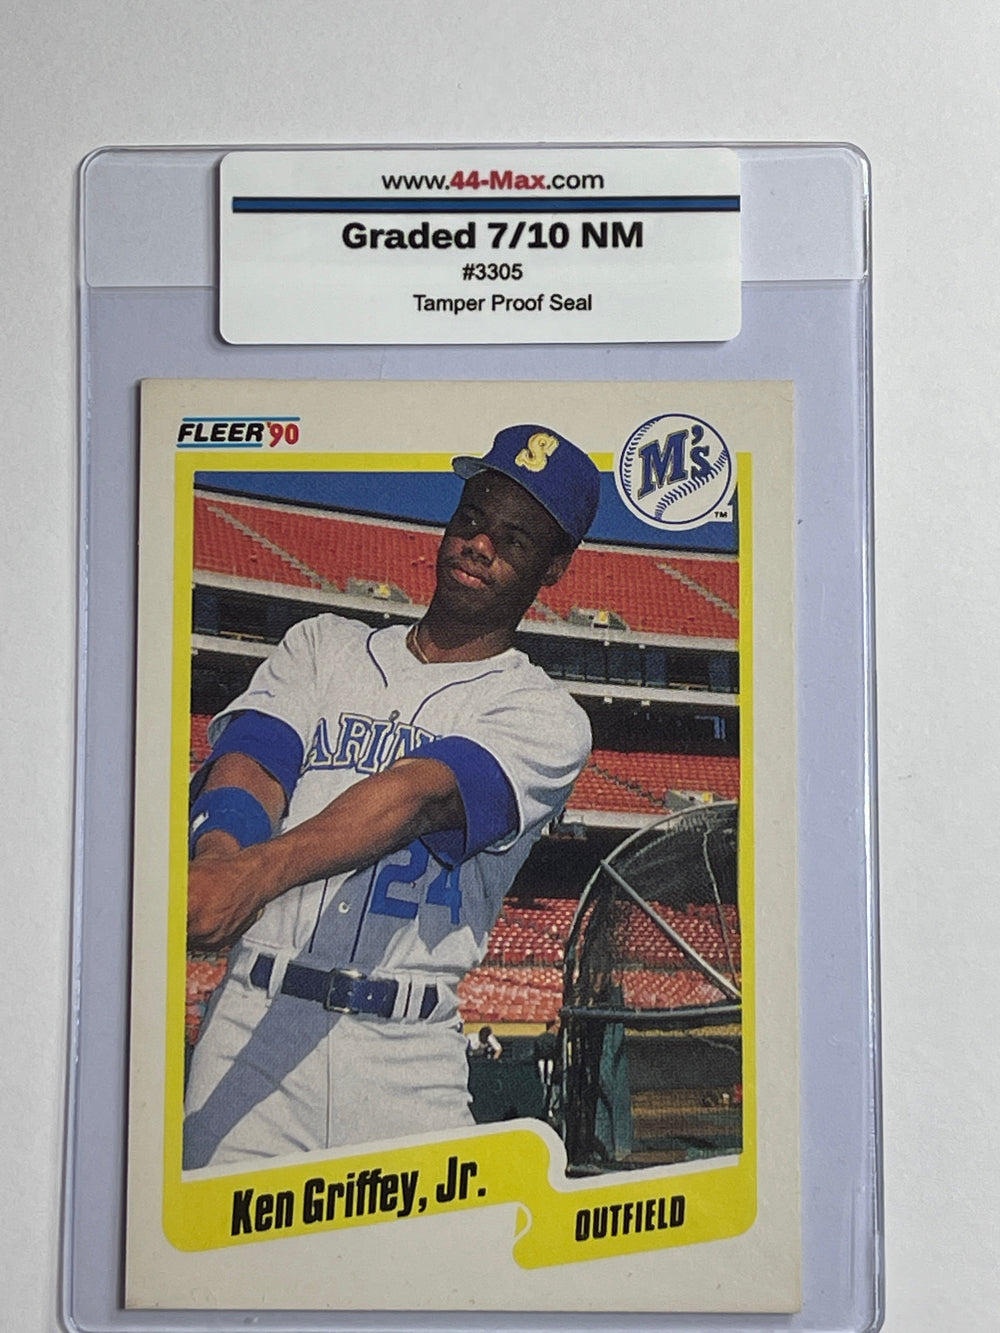 Ken Griffey Jr 1990 Fleer Mariners #513 Card. 44-Max 7/10 NM #3305